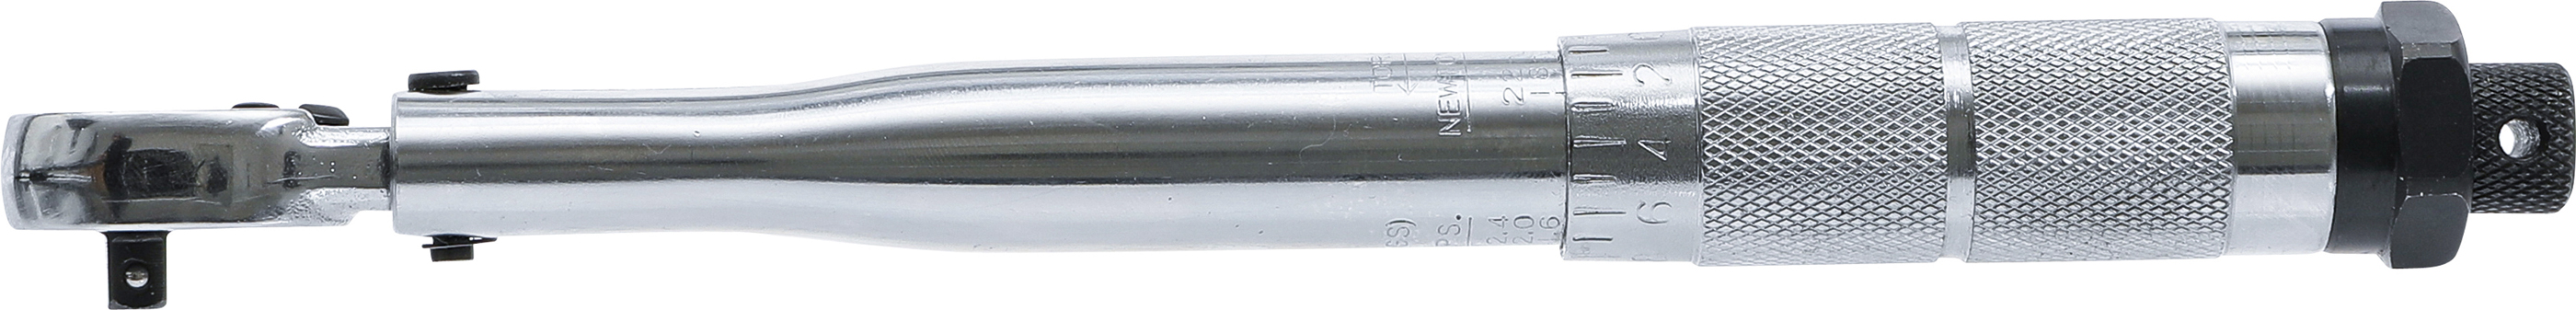 BGS Drehmomentschlüssel | Abtrieb Außenvierkant 6,3 mm (1/4") | 2 - 24 Nm